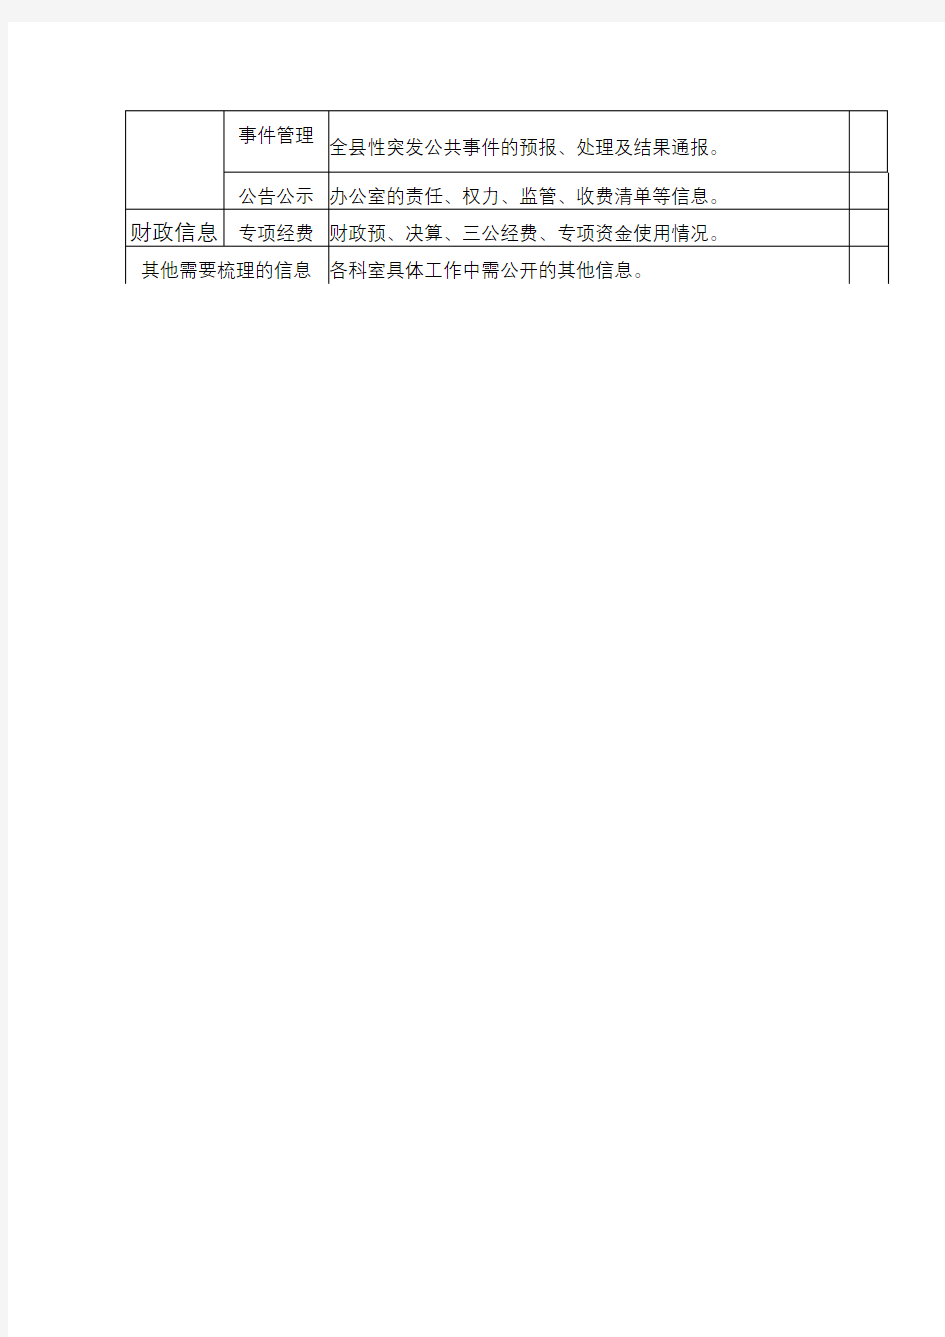 任县人民政府办公室政府信息公开目录【模板】